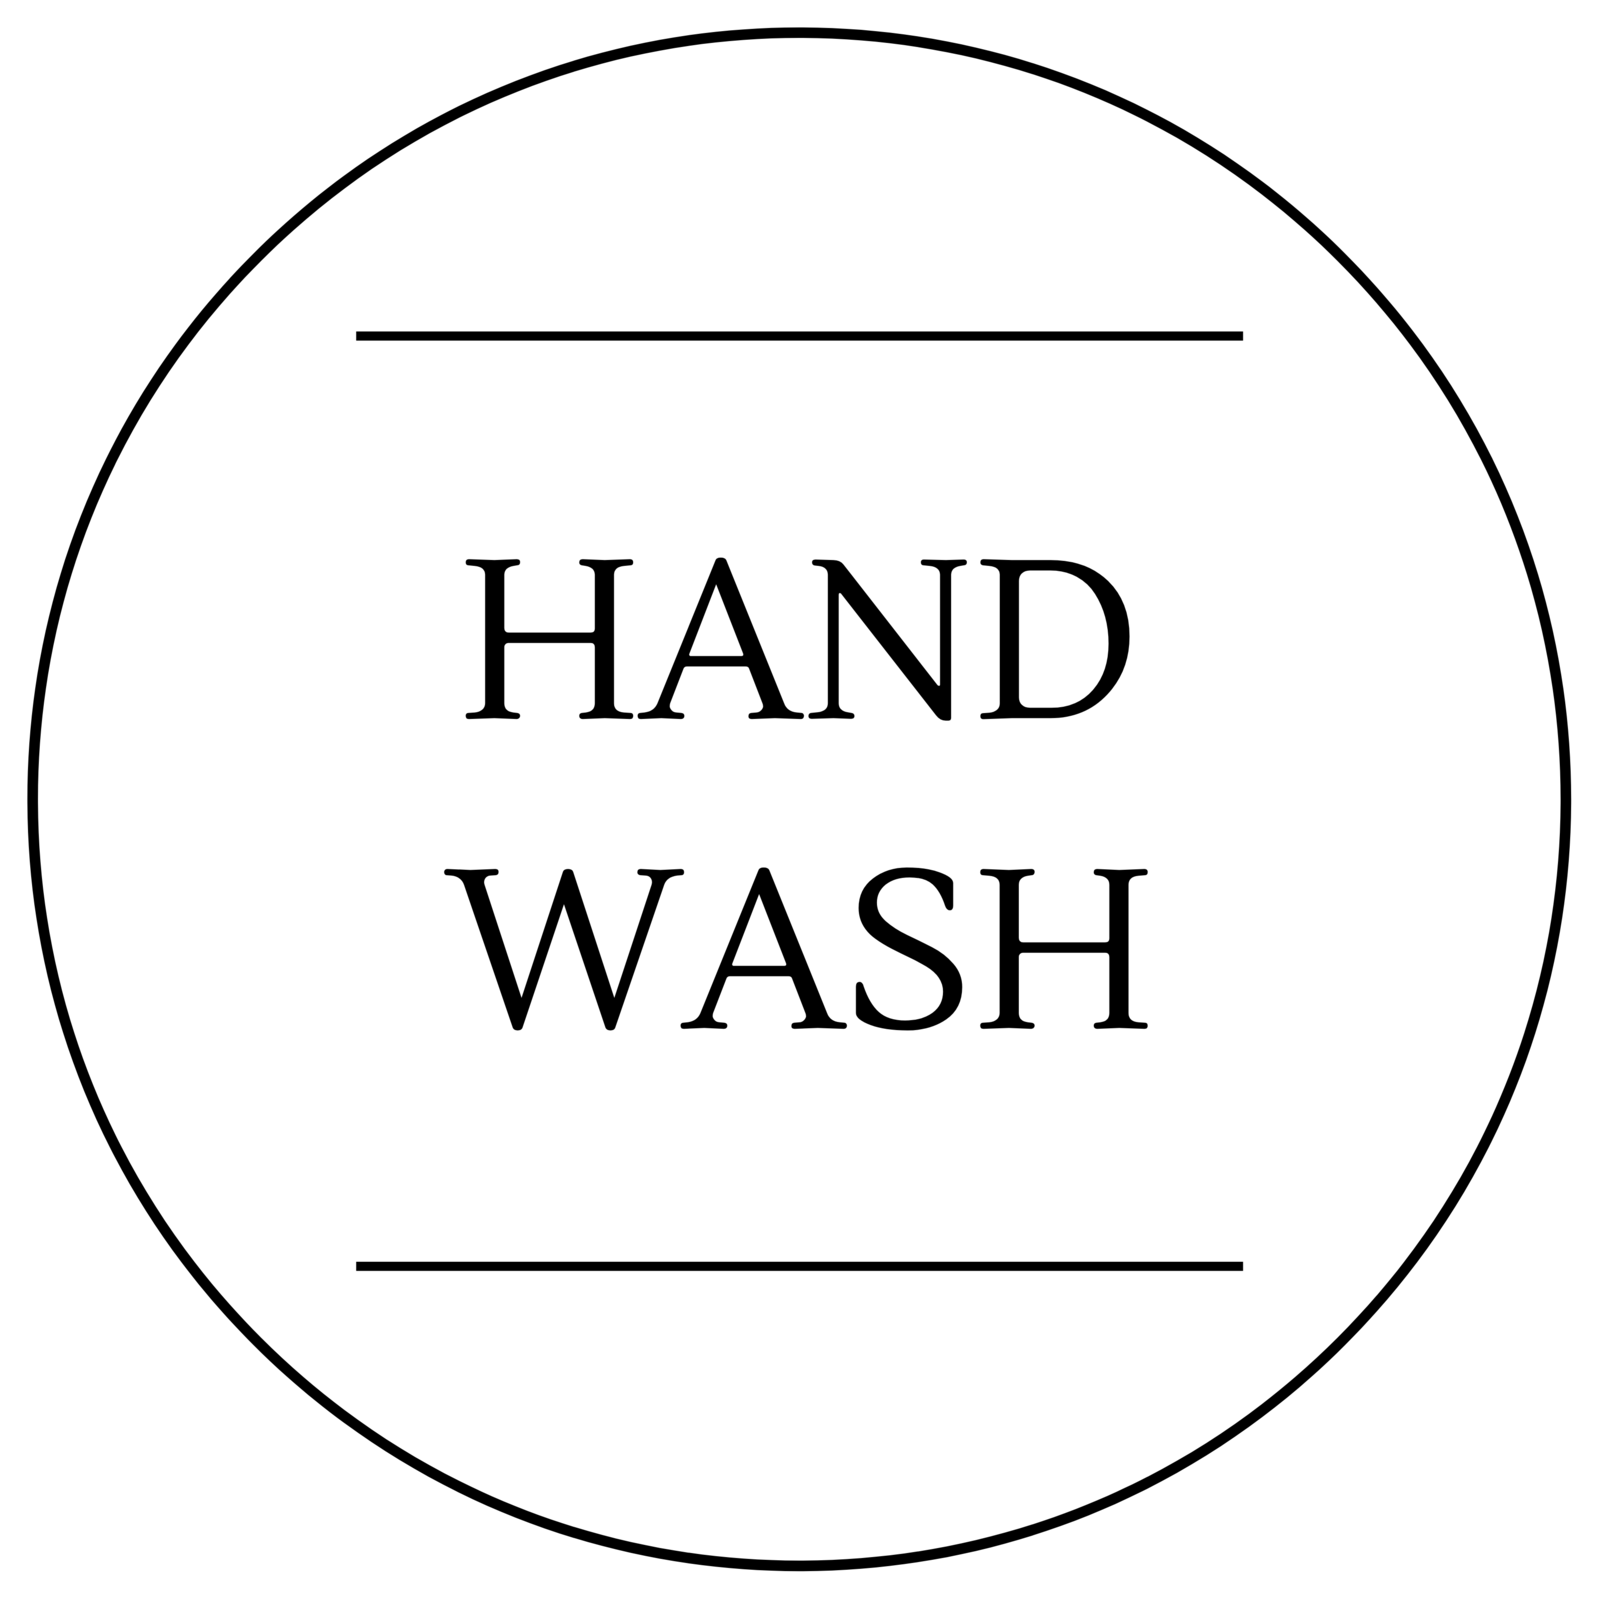 Hand Wash Label Vitalia